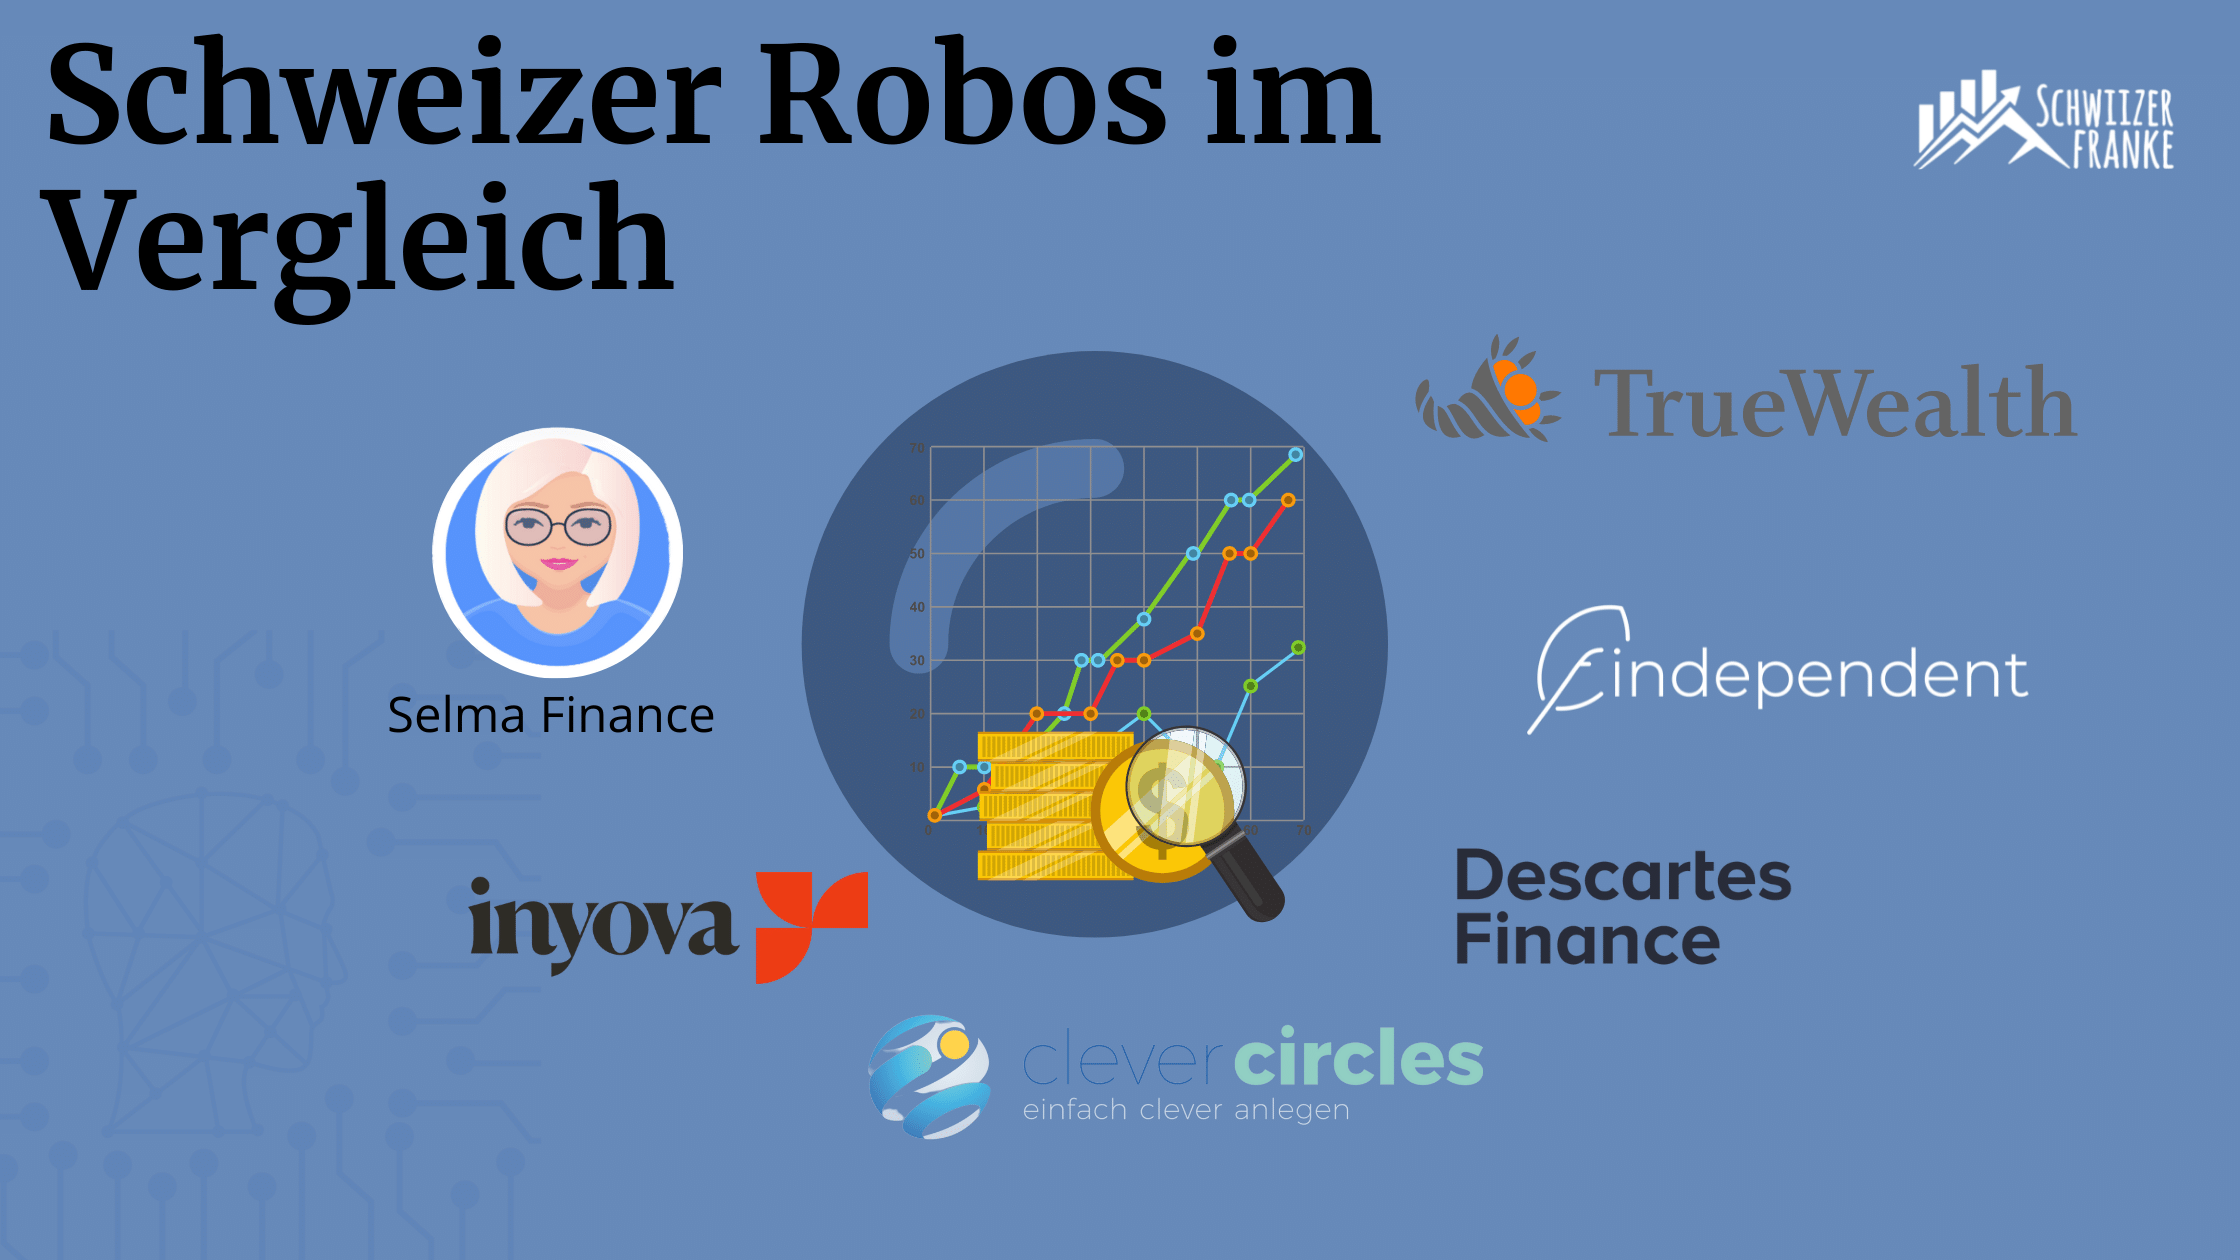 schweizer robo advisor vergleichsbericht erfahrungen schweizer robo advisor vergleich. bester robo advisor schweiz im vergleich sind die erfahrungen findependent vs true wealth gut ausgefallen.